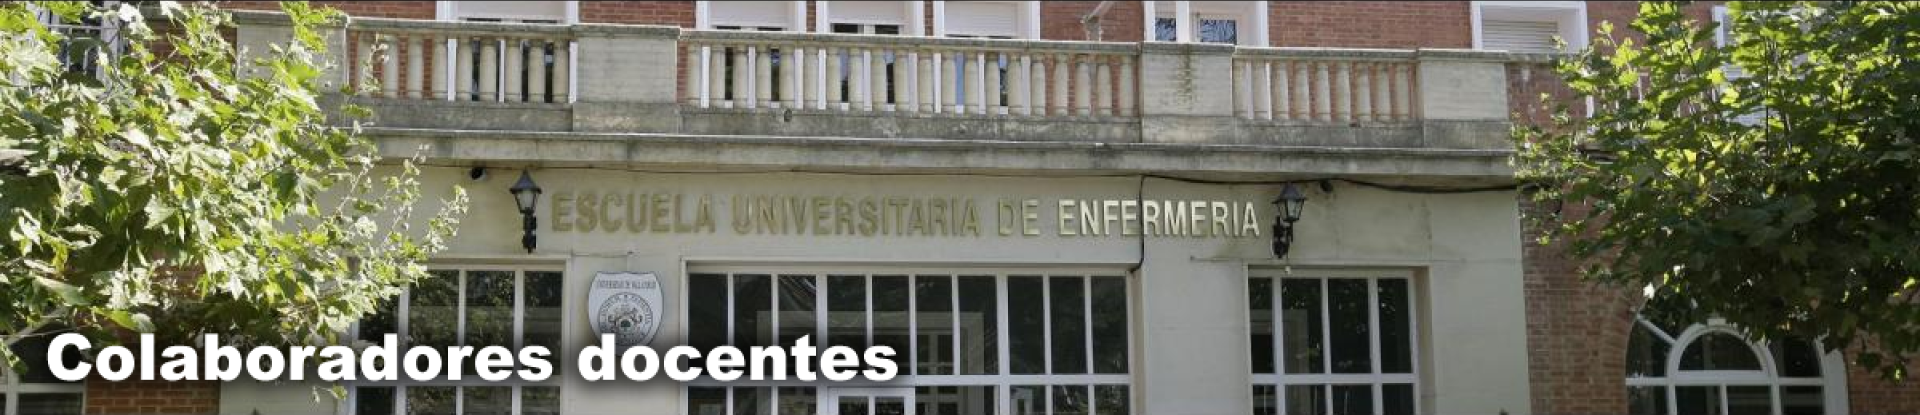 EU enfermería | Portal de Palencia